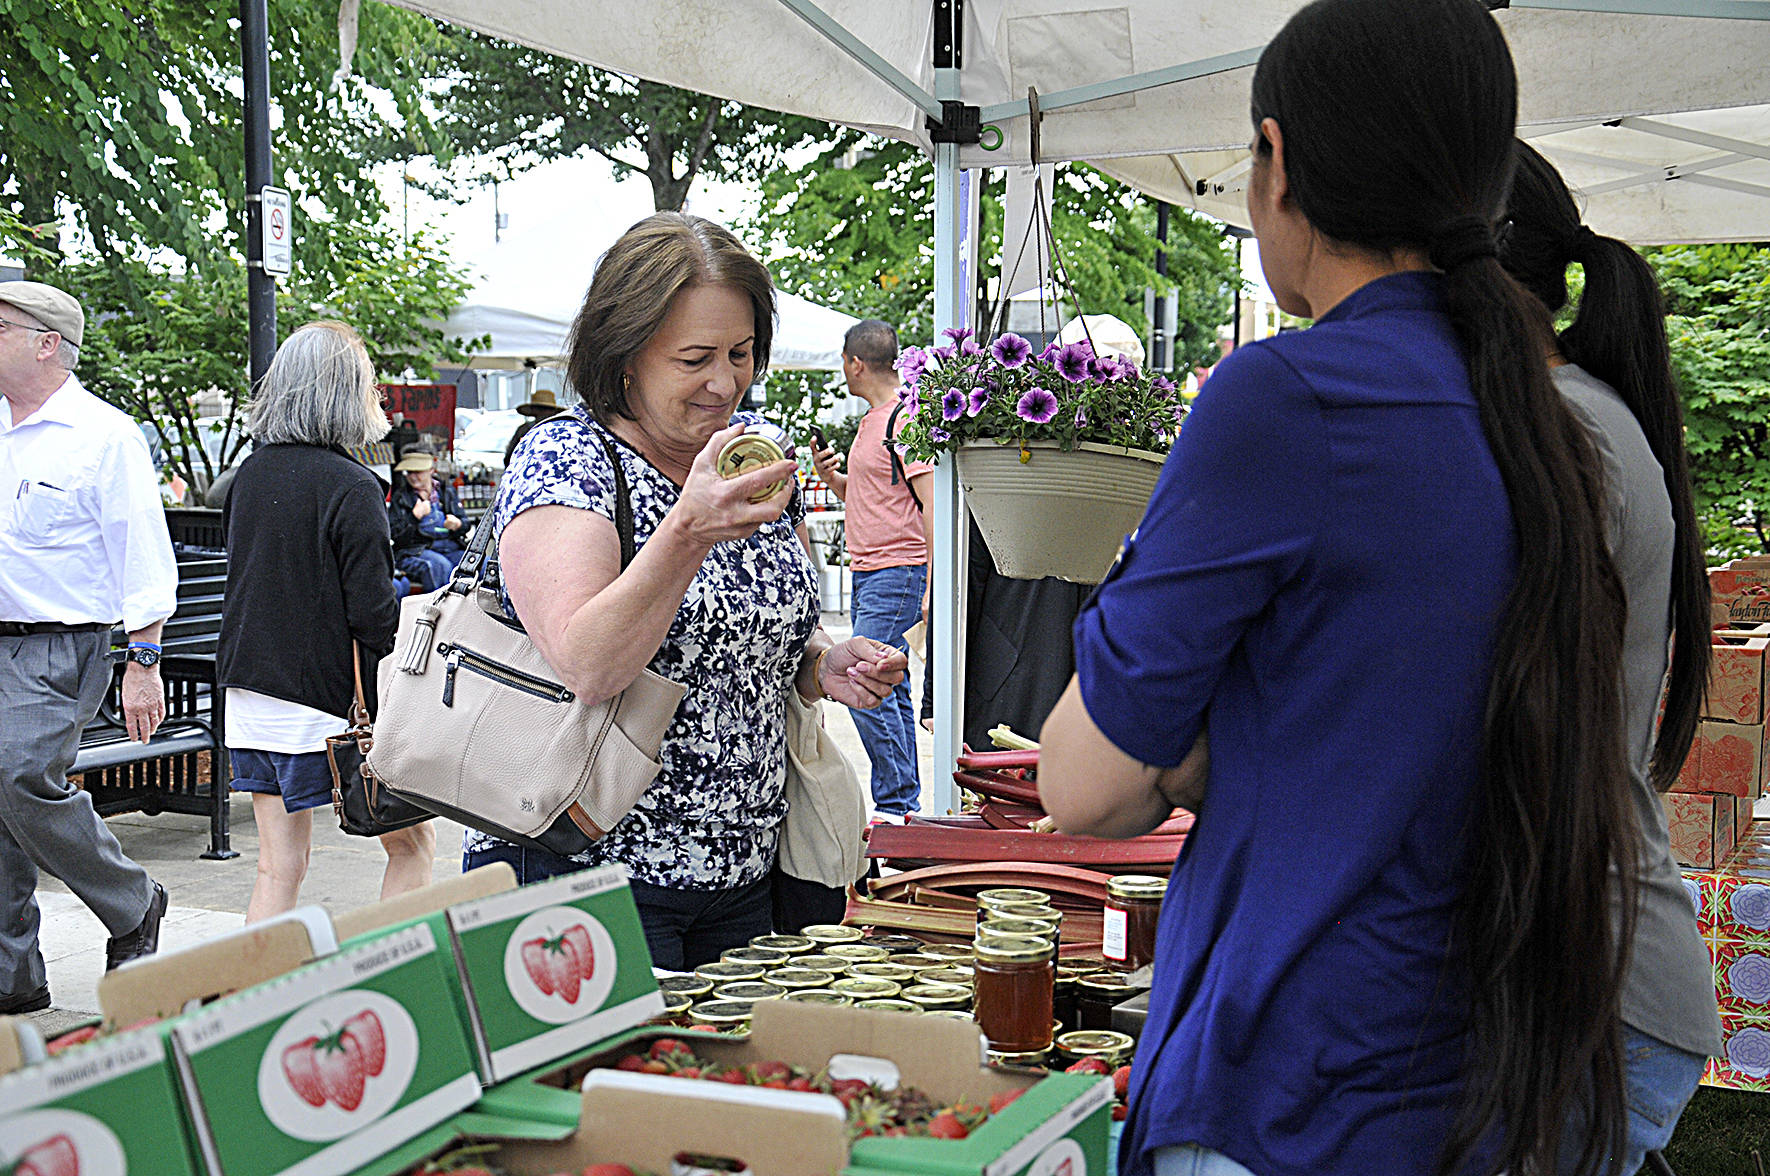 Renton Farmers Market opens on June 4